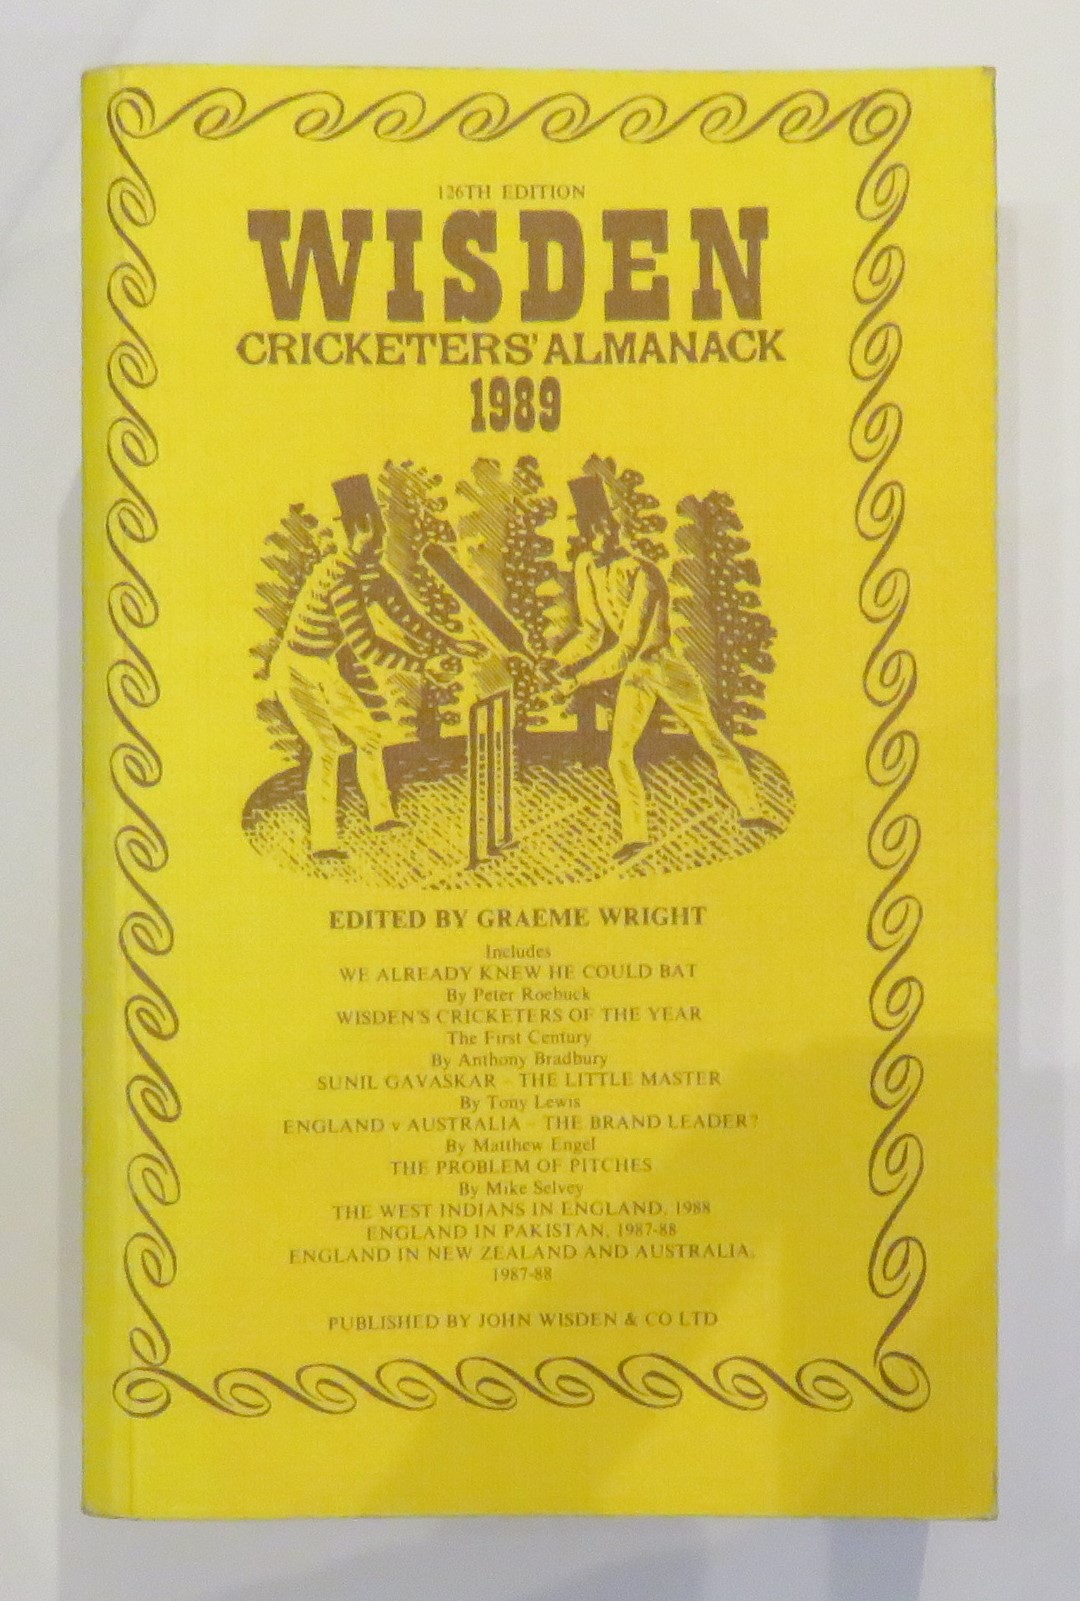 Wisden Cricketers' Almanack 1989